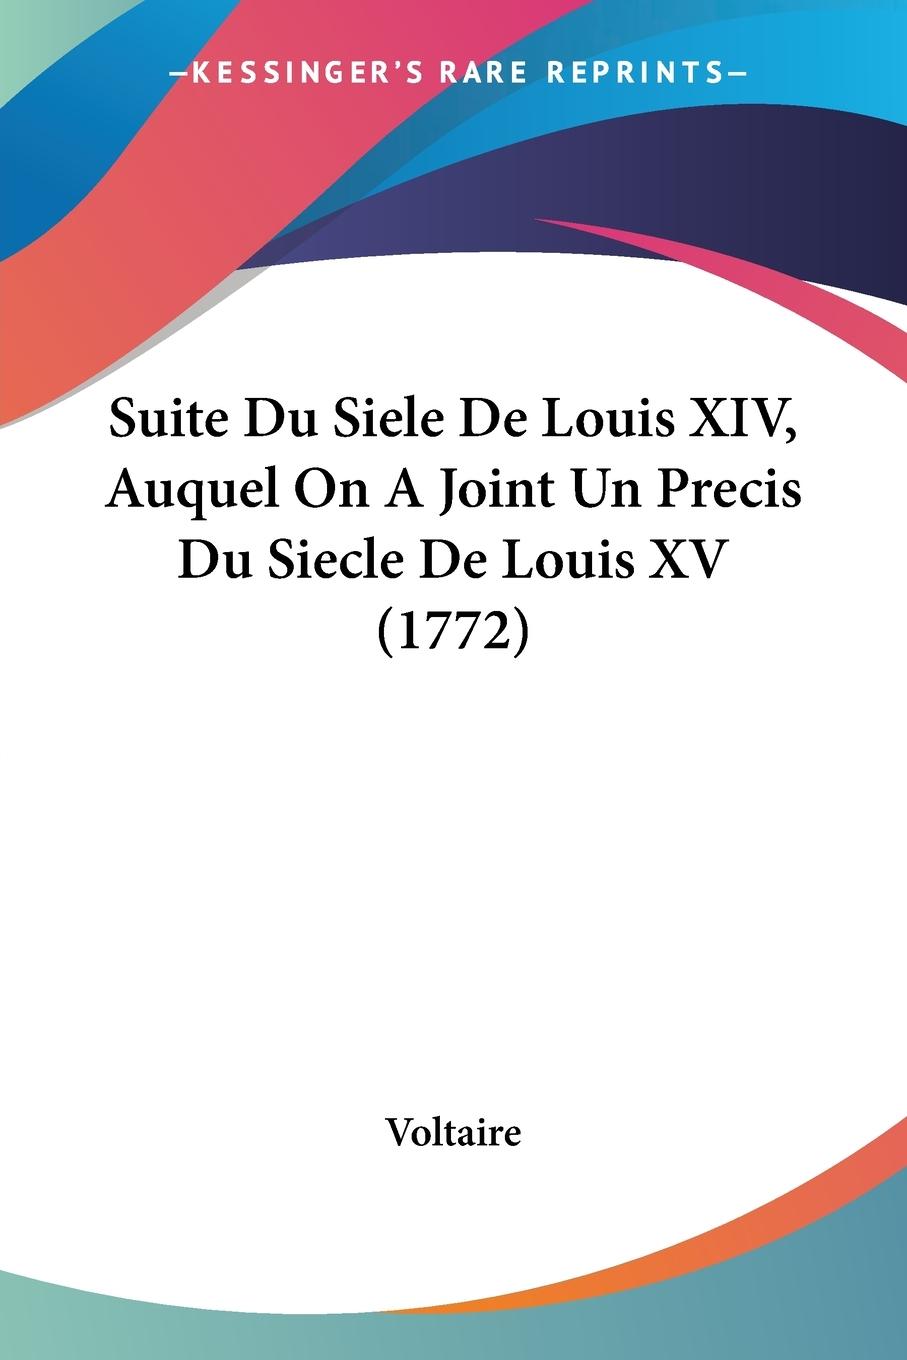 Suite Du Siele De Louis XIV, Auquel On A Joint Un Precis Du Siecle De Louis XV (1772) - Voltaire